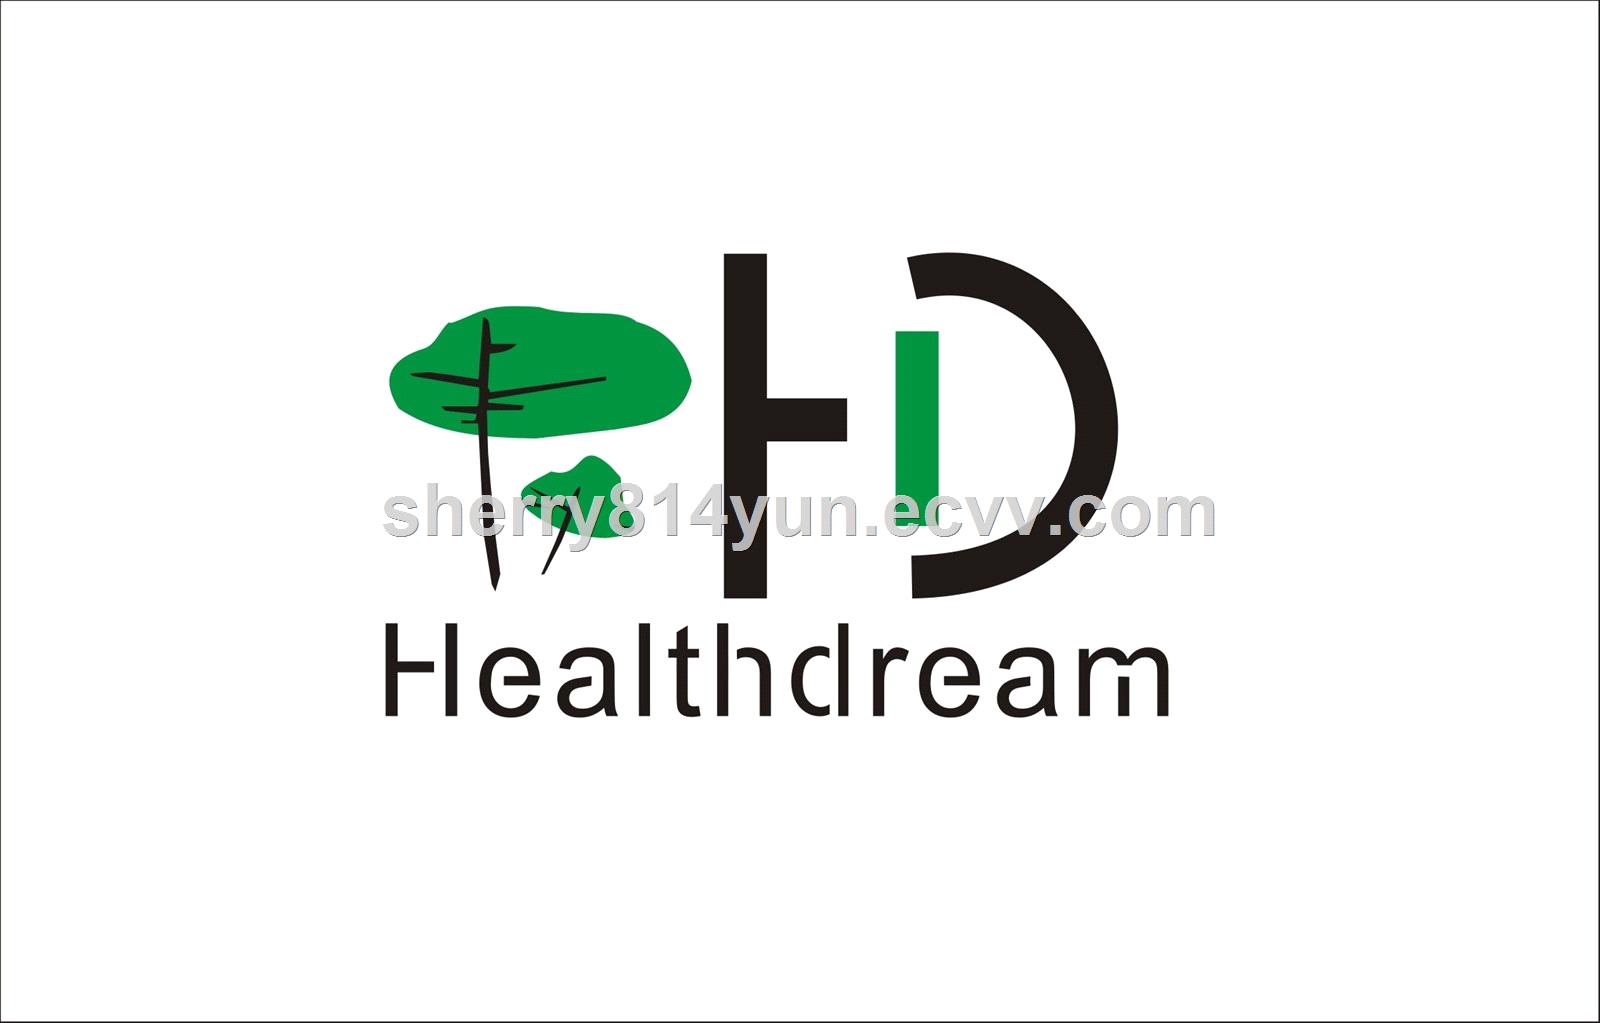 Wuhan Healthdream Biological Co., Ltd.